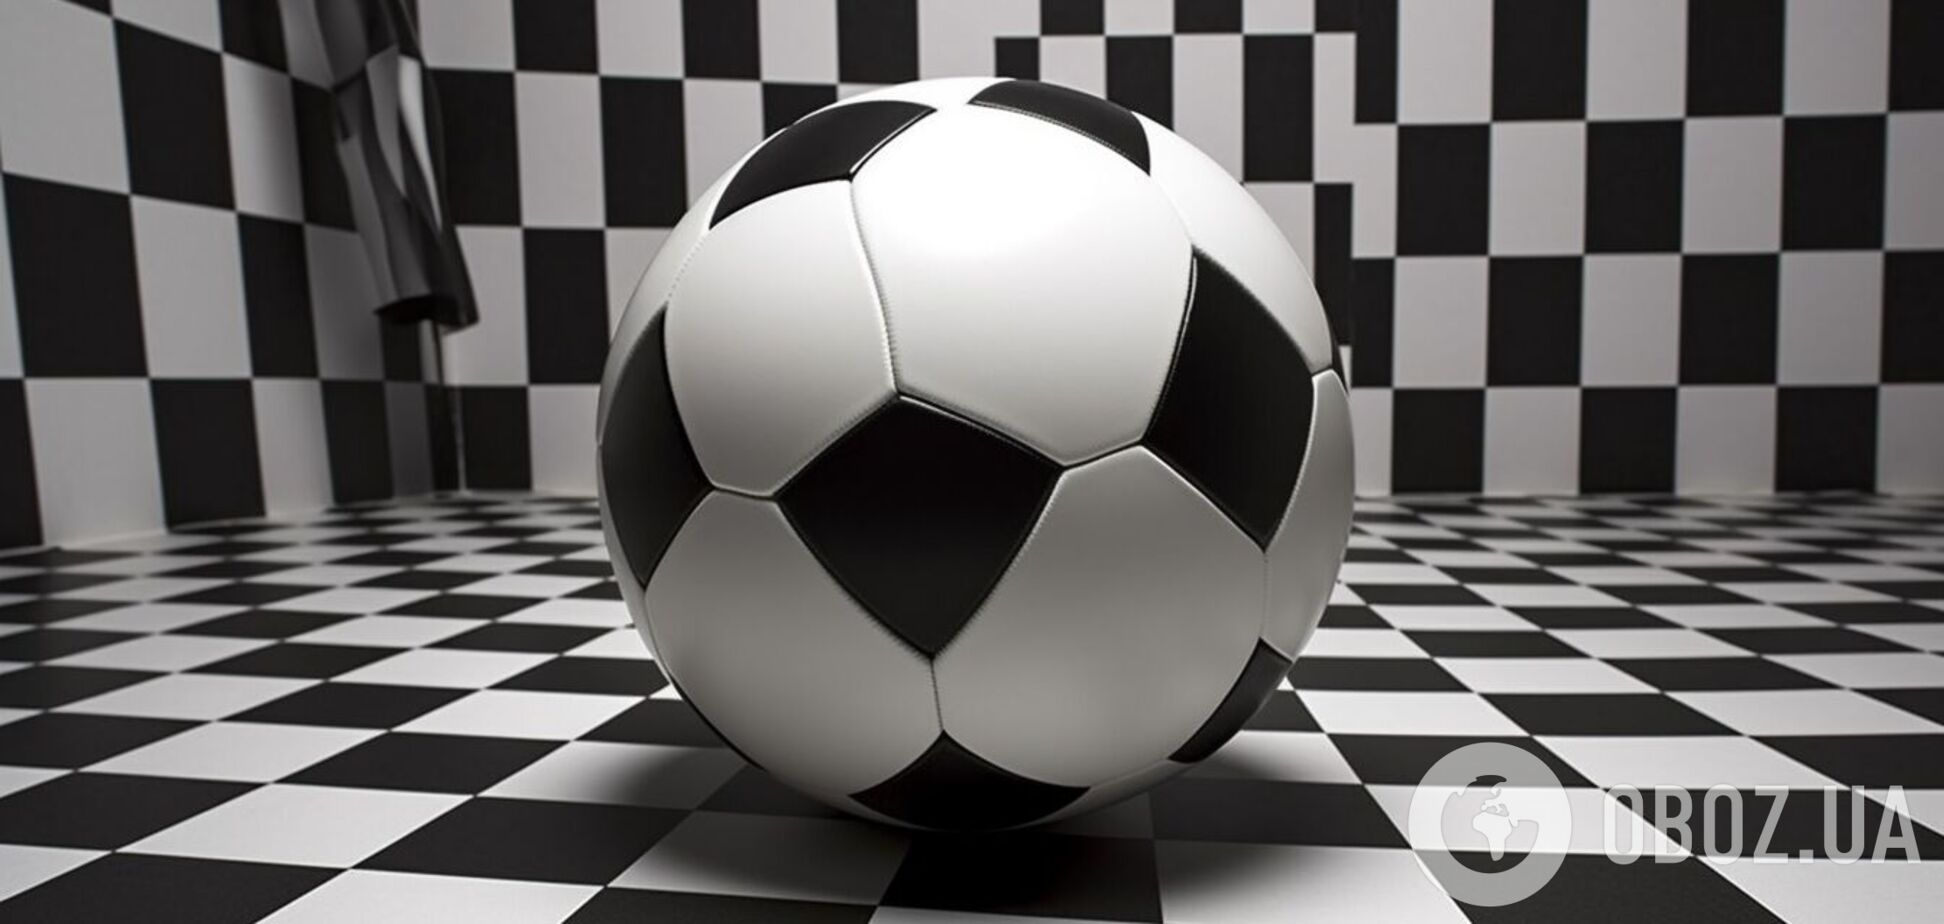 Під силу одиницям із найвищим IQ: головоломка з футбольним м’ячем